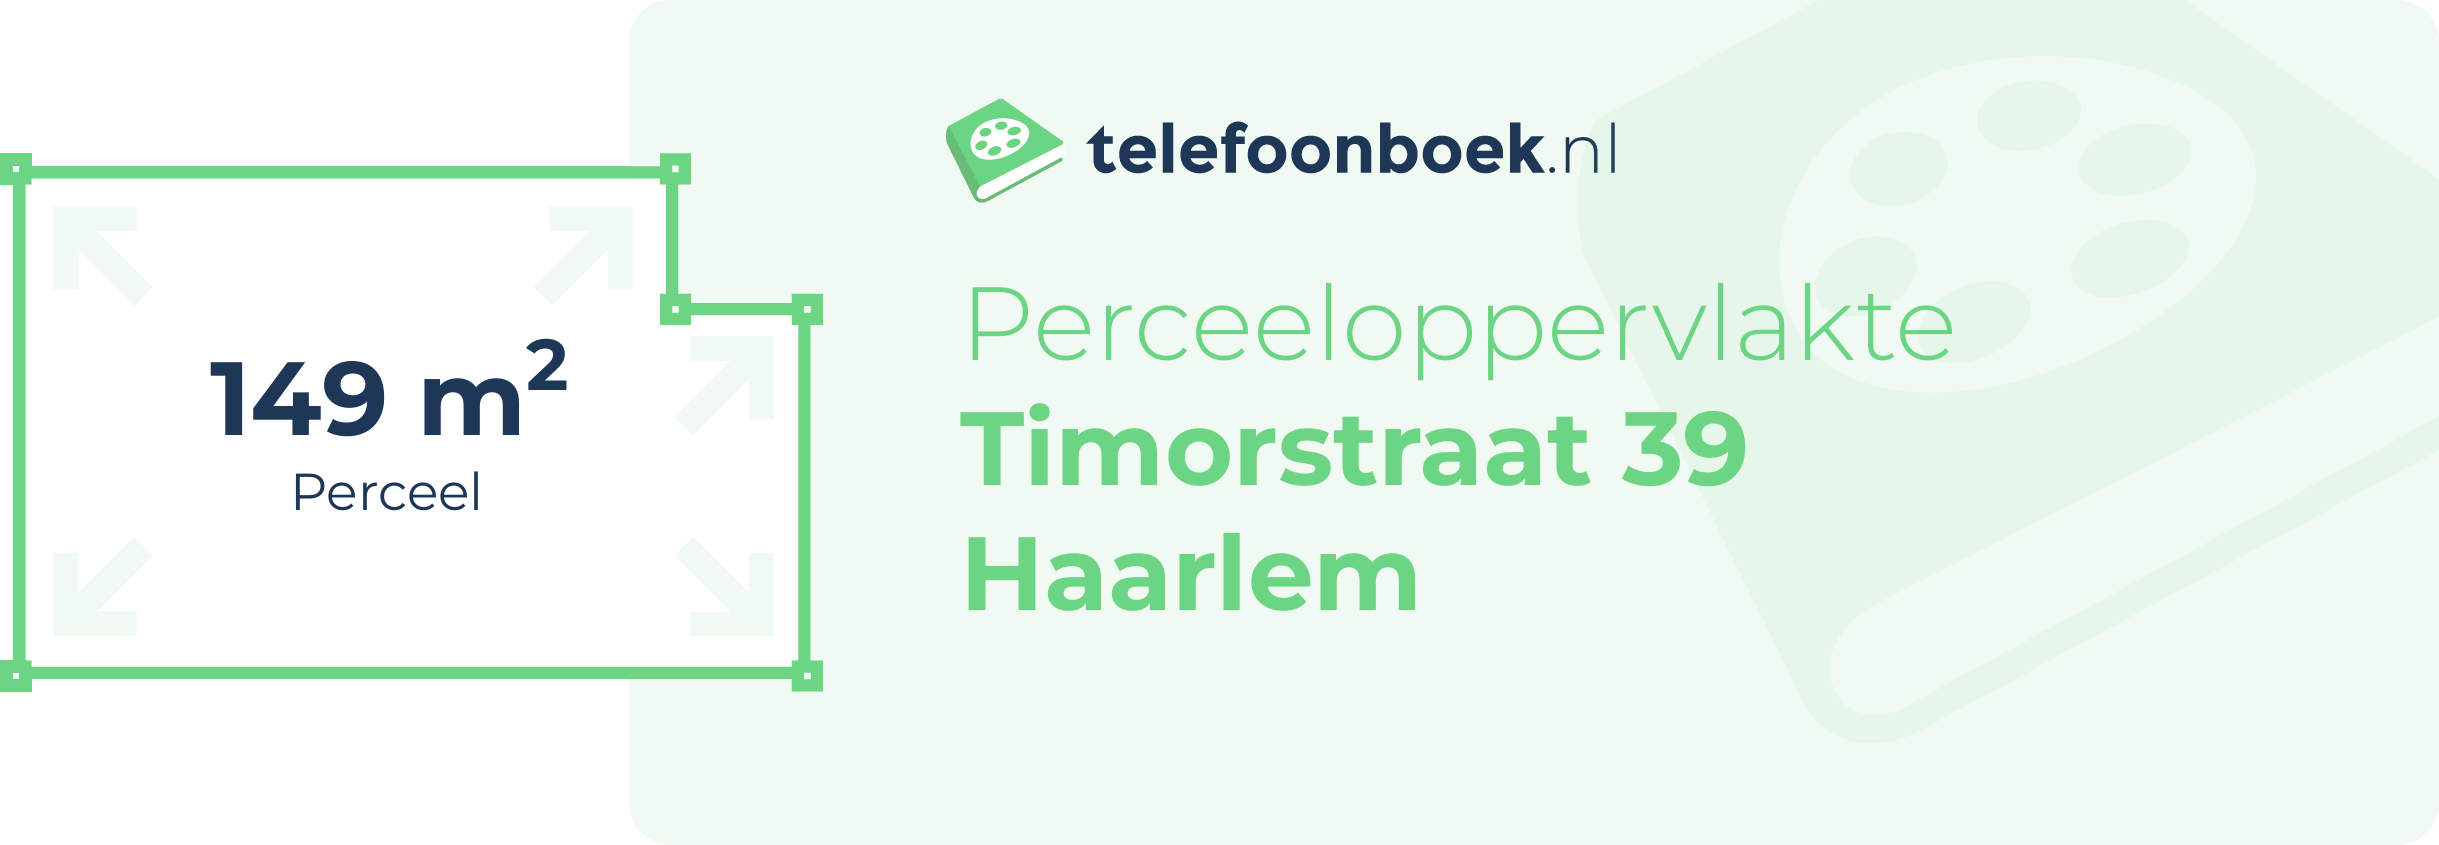 Perceeloppervlakte Timorstraat 39 Haarlem